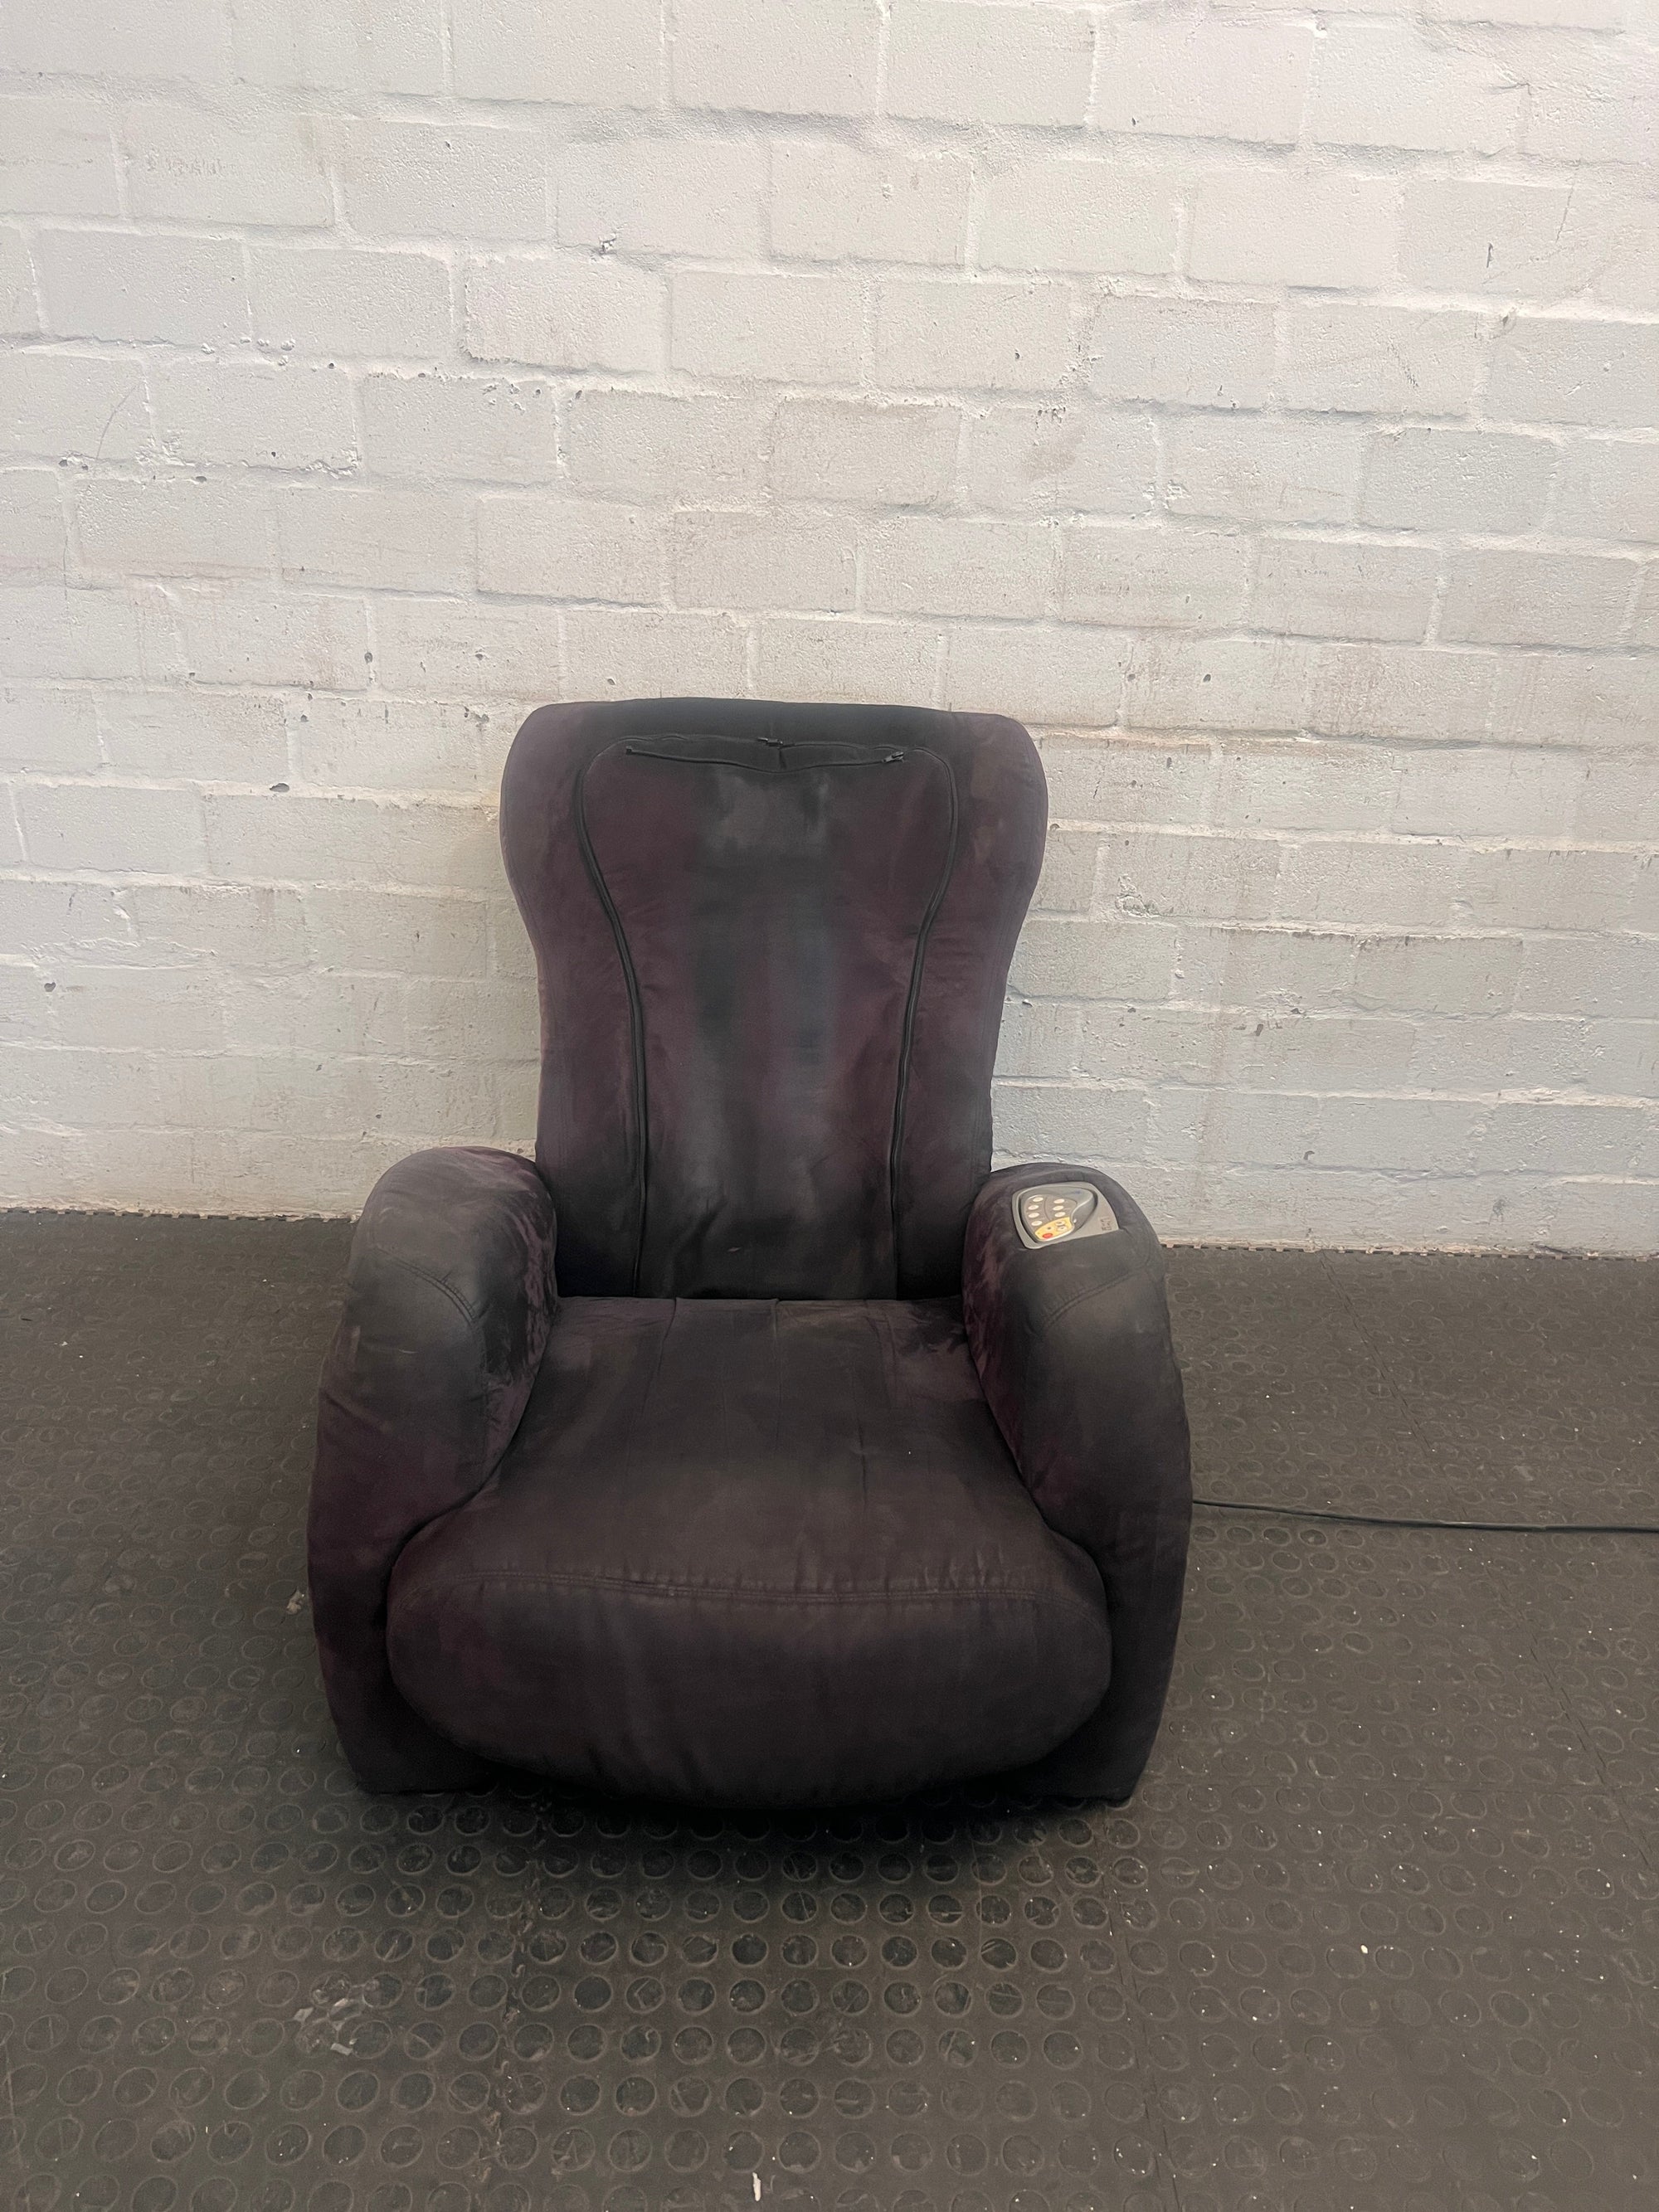 Black Massage Chair